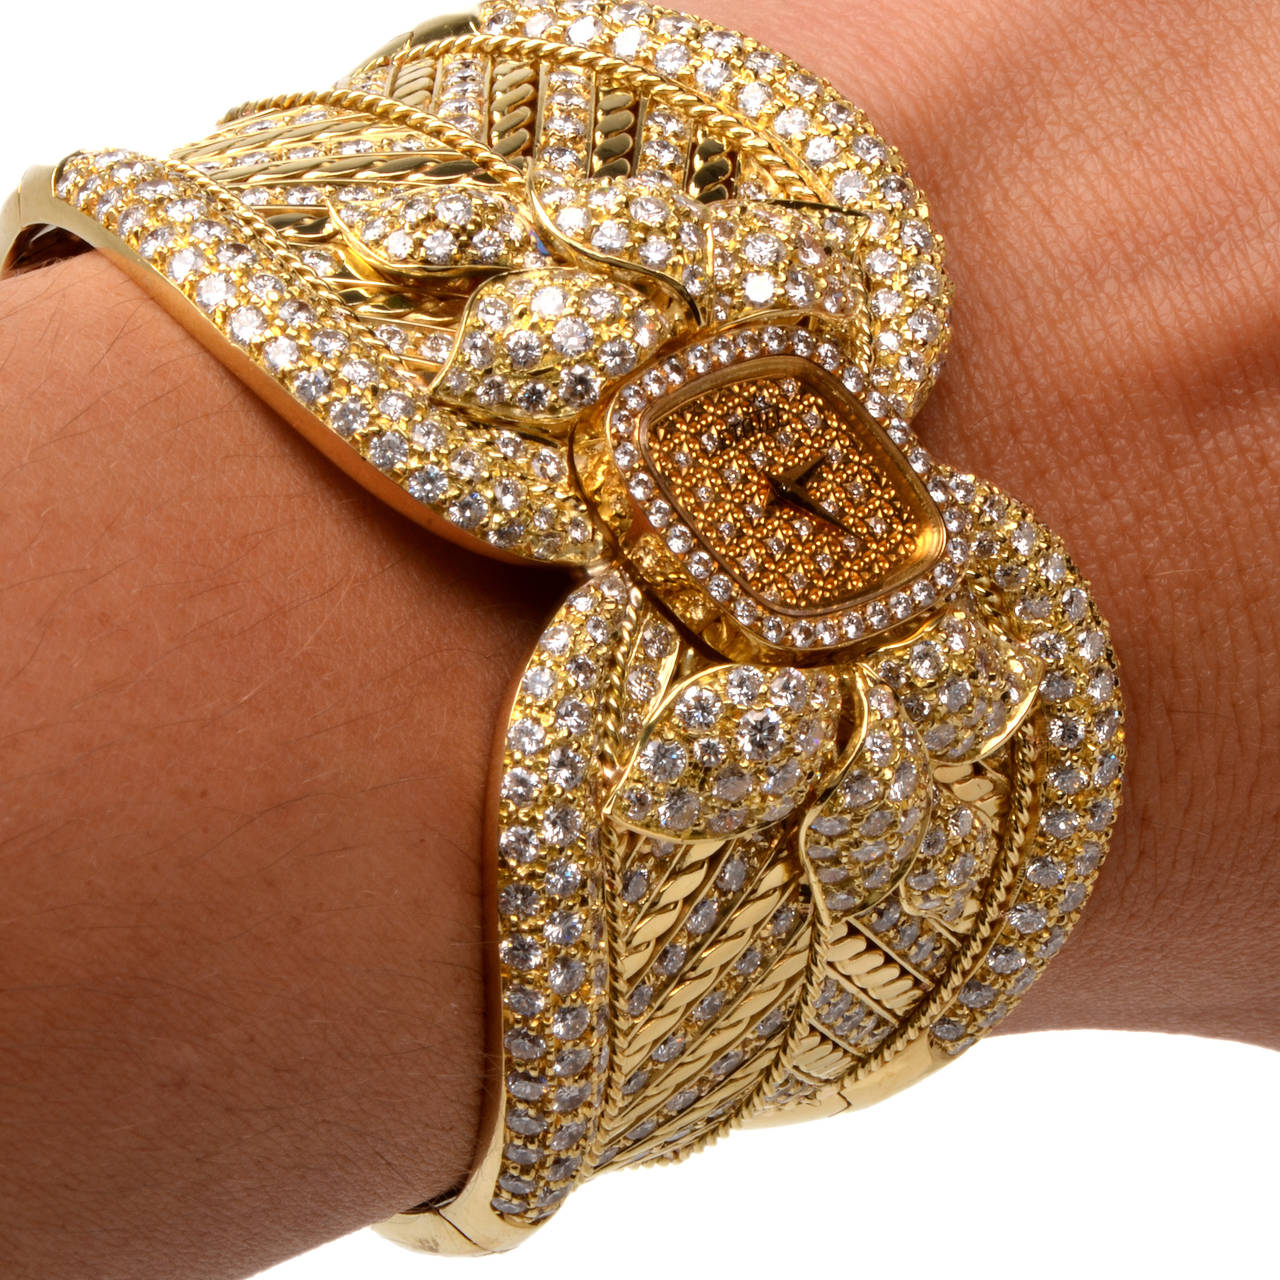 Etoile Lady's Yellow Gold and Diamond Cuff Bracelet Watch 1